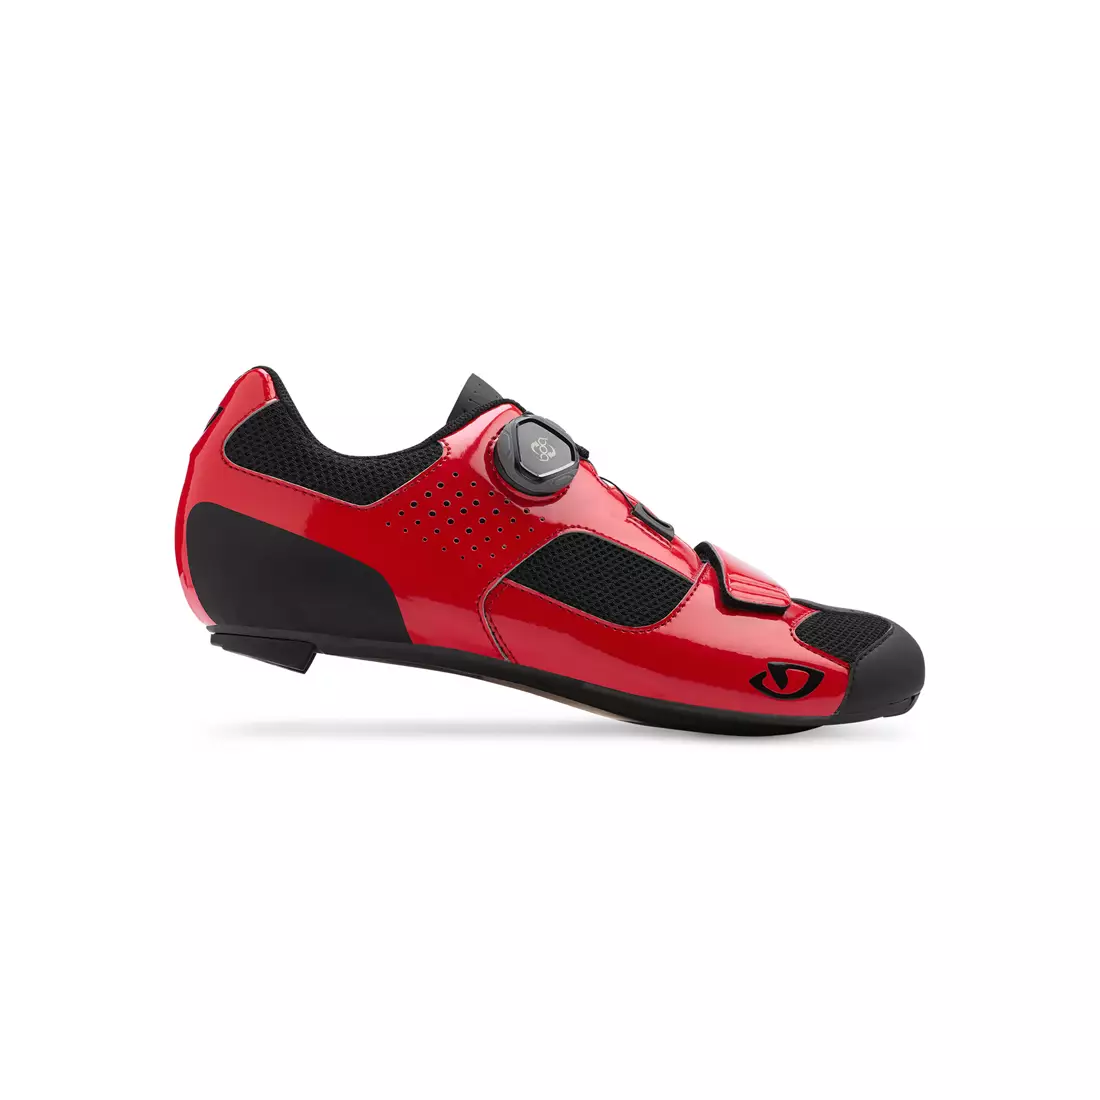 Pánská cyklistická obuv GIRO TRANS BOA bright red black 